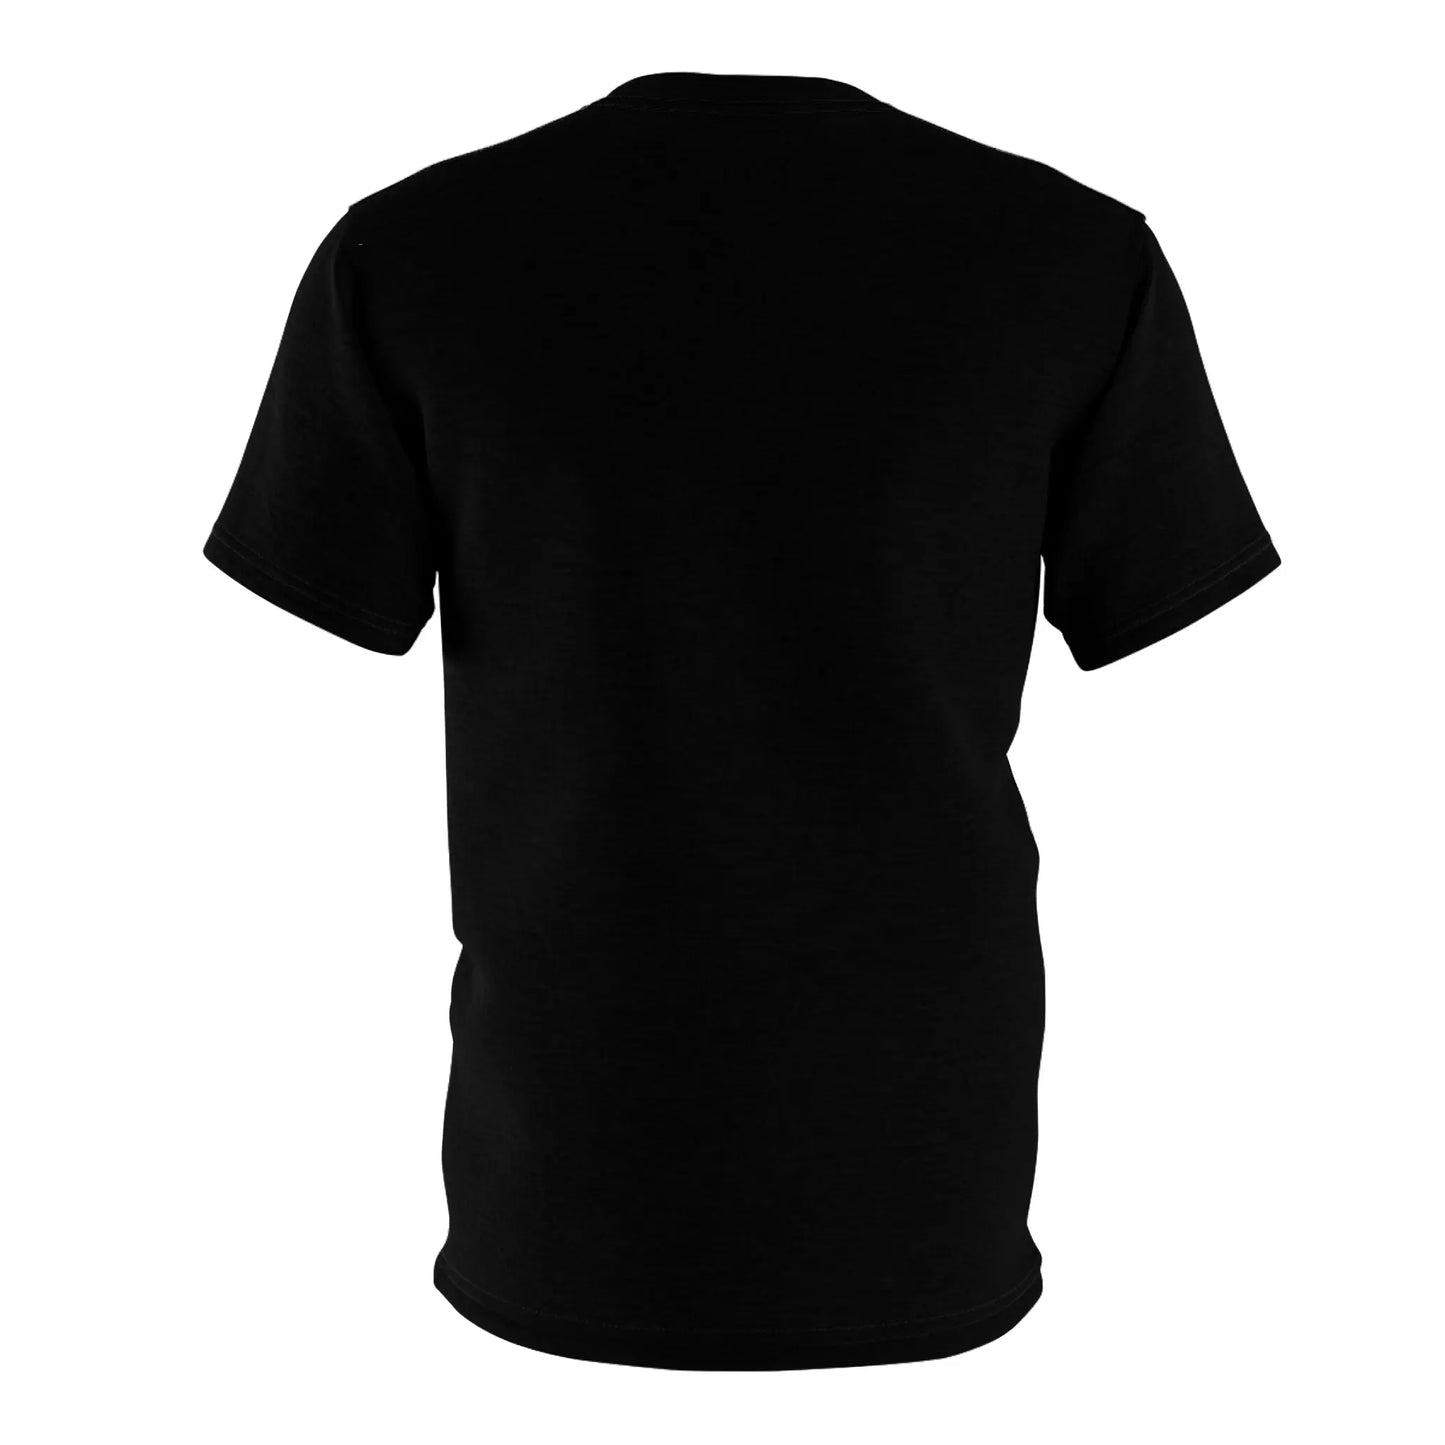 Primitive T-shirt Unisex Cut & Sew - Official primitive store